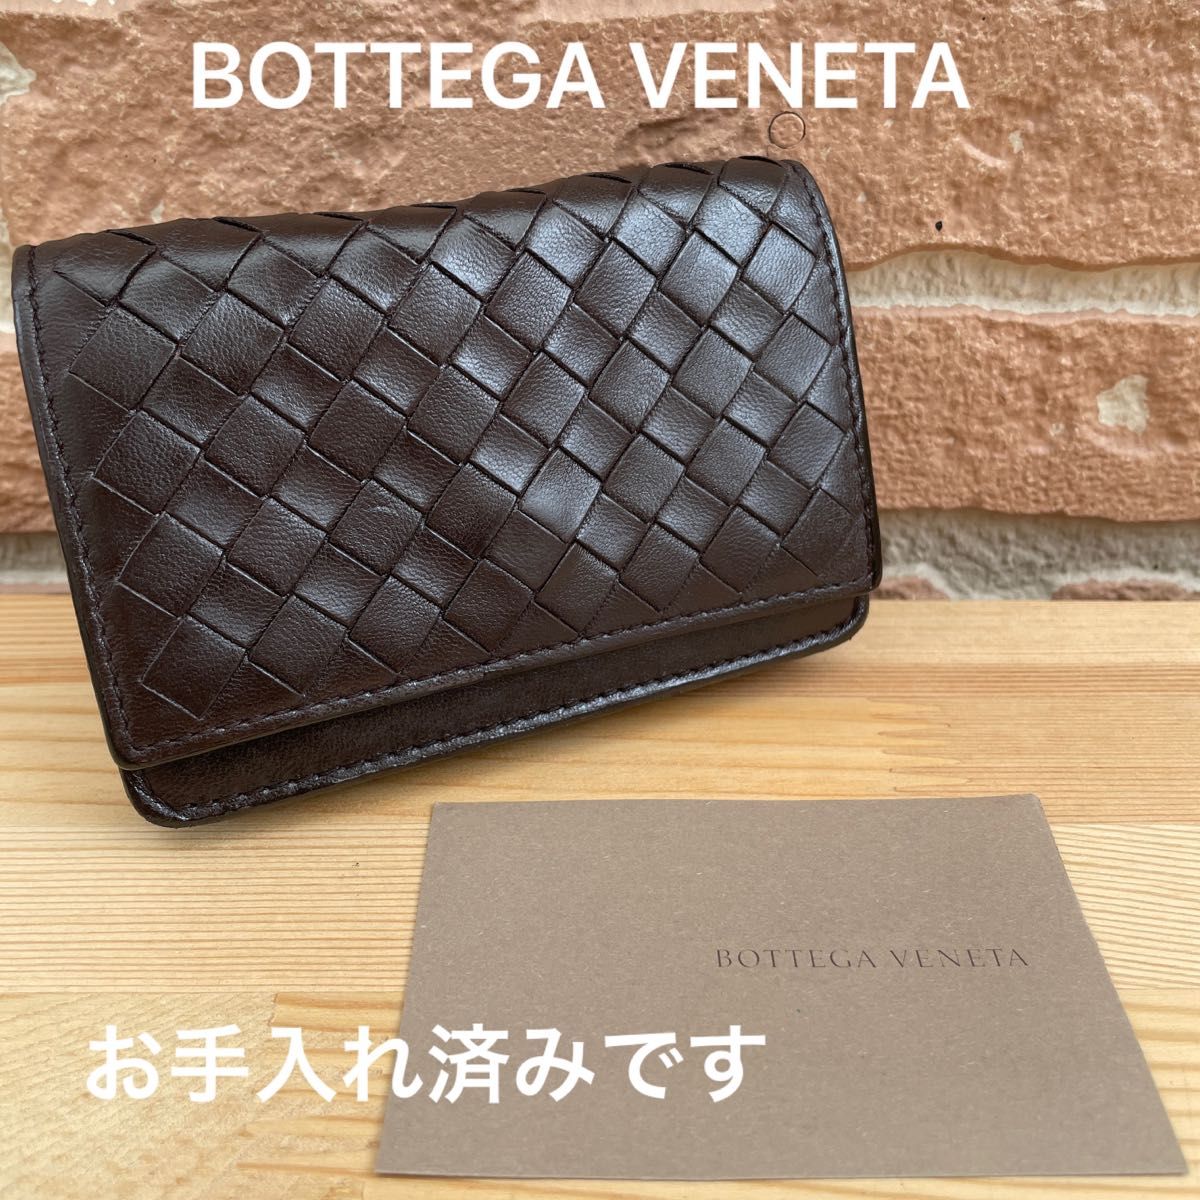 ◆正規品◆ ボッテガヴェネタ BOTTEGA VENETA イントレチャート 名刺入れ カードケース ダークブラウン